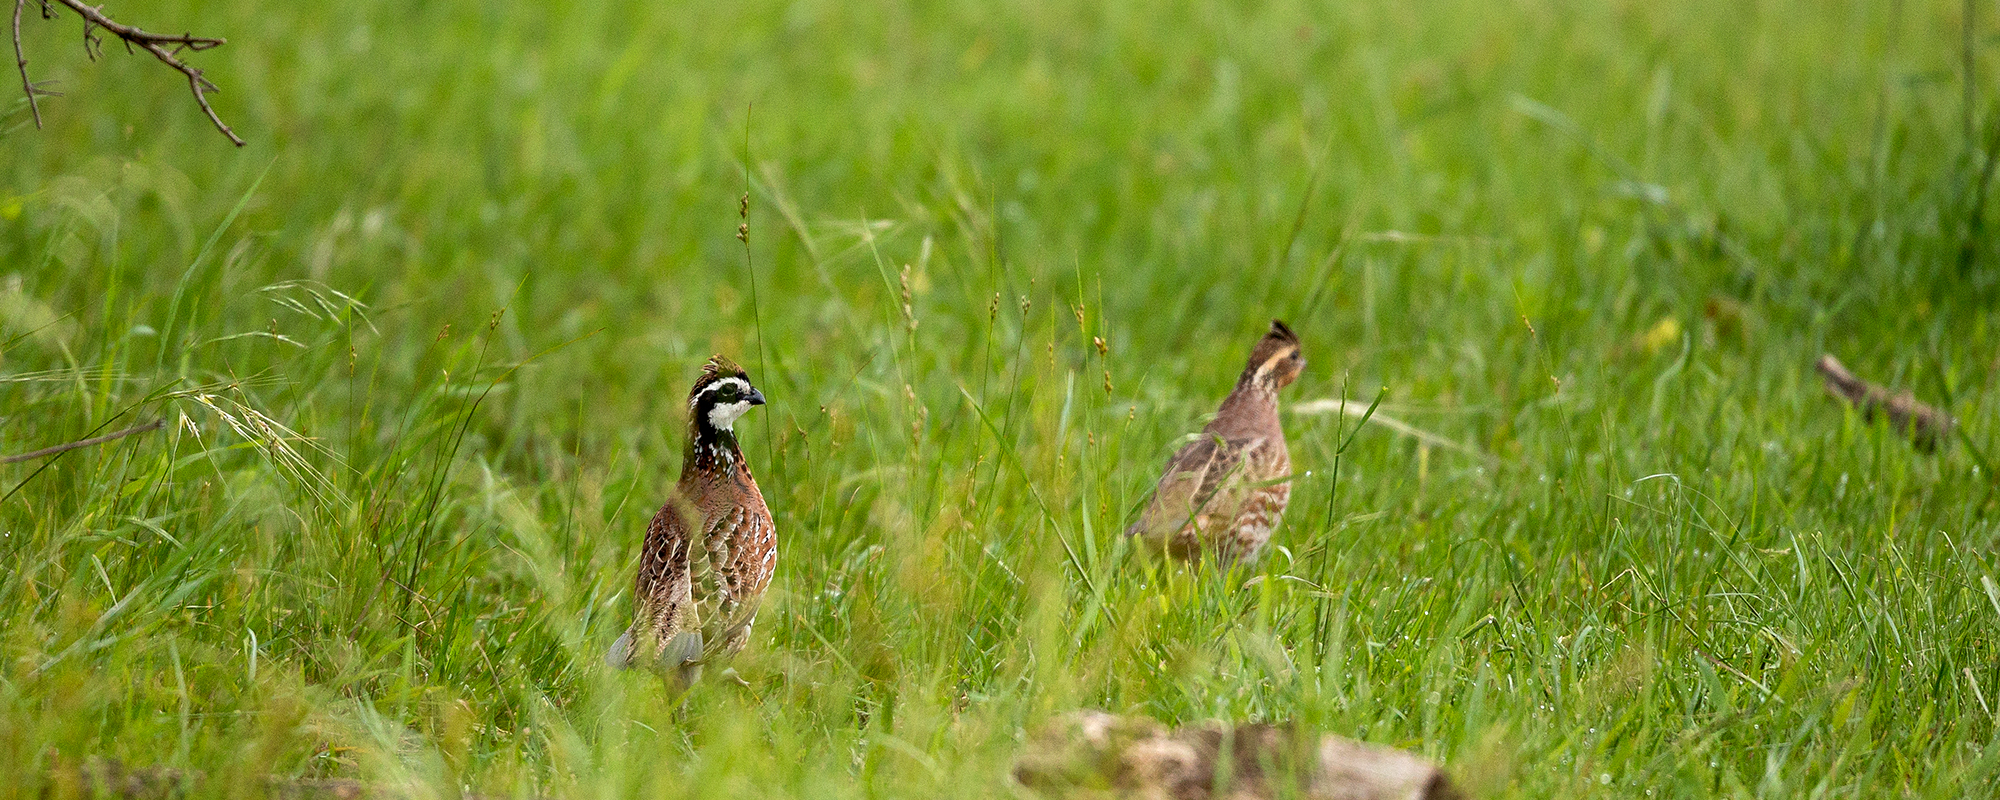 Wildlife Watch: Abundant Ground-nesting Birds Sign of Healthy Grasslands